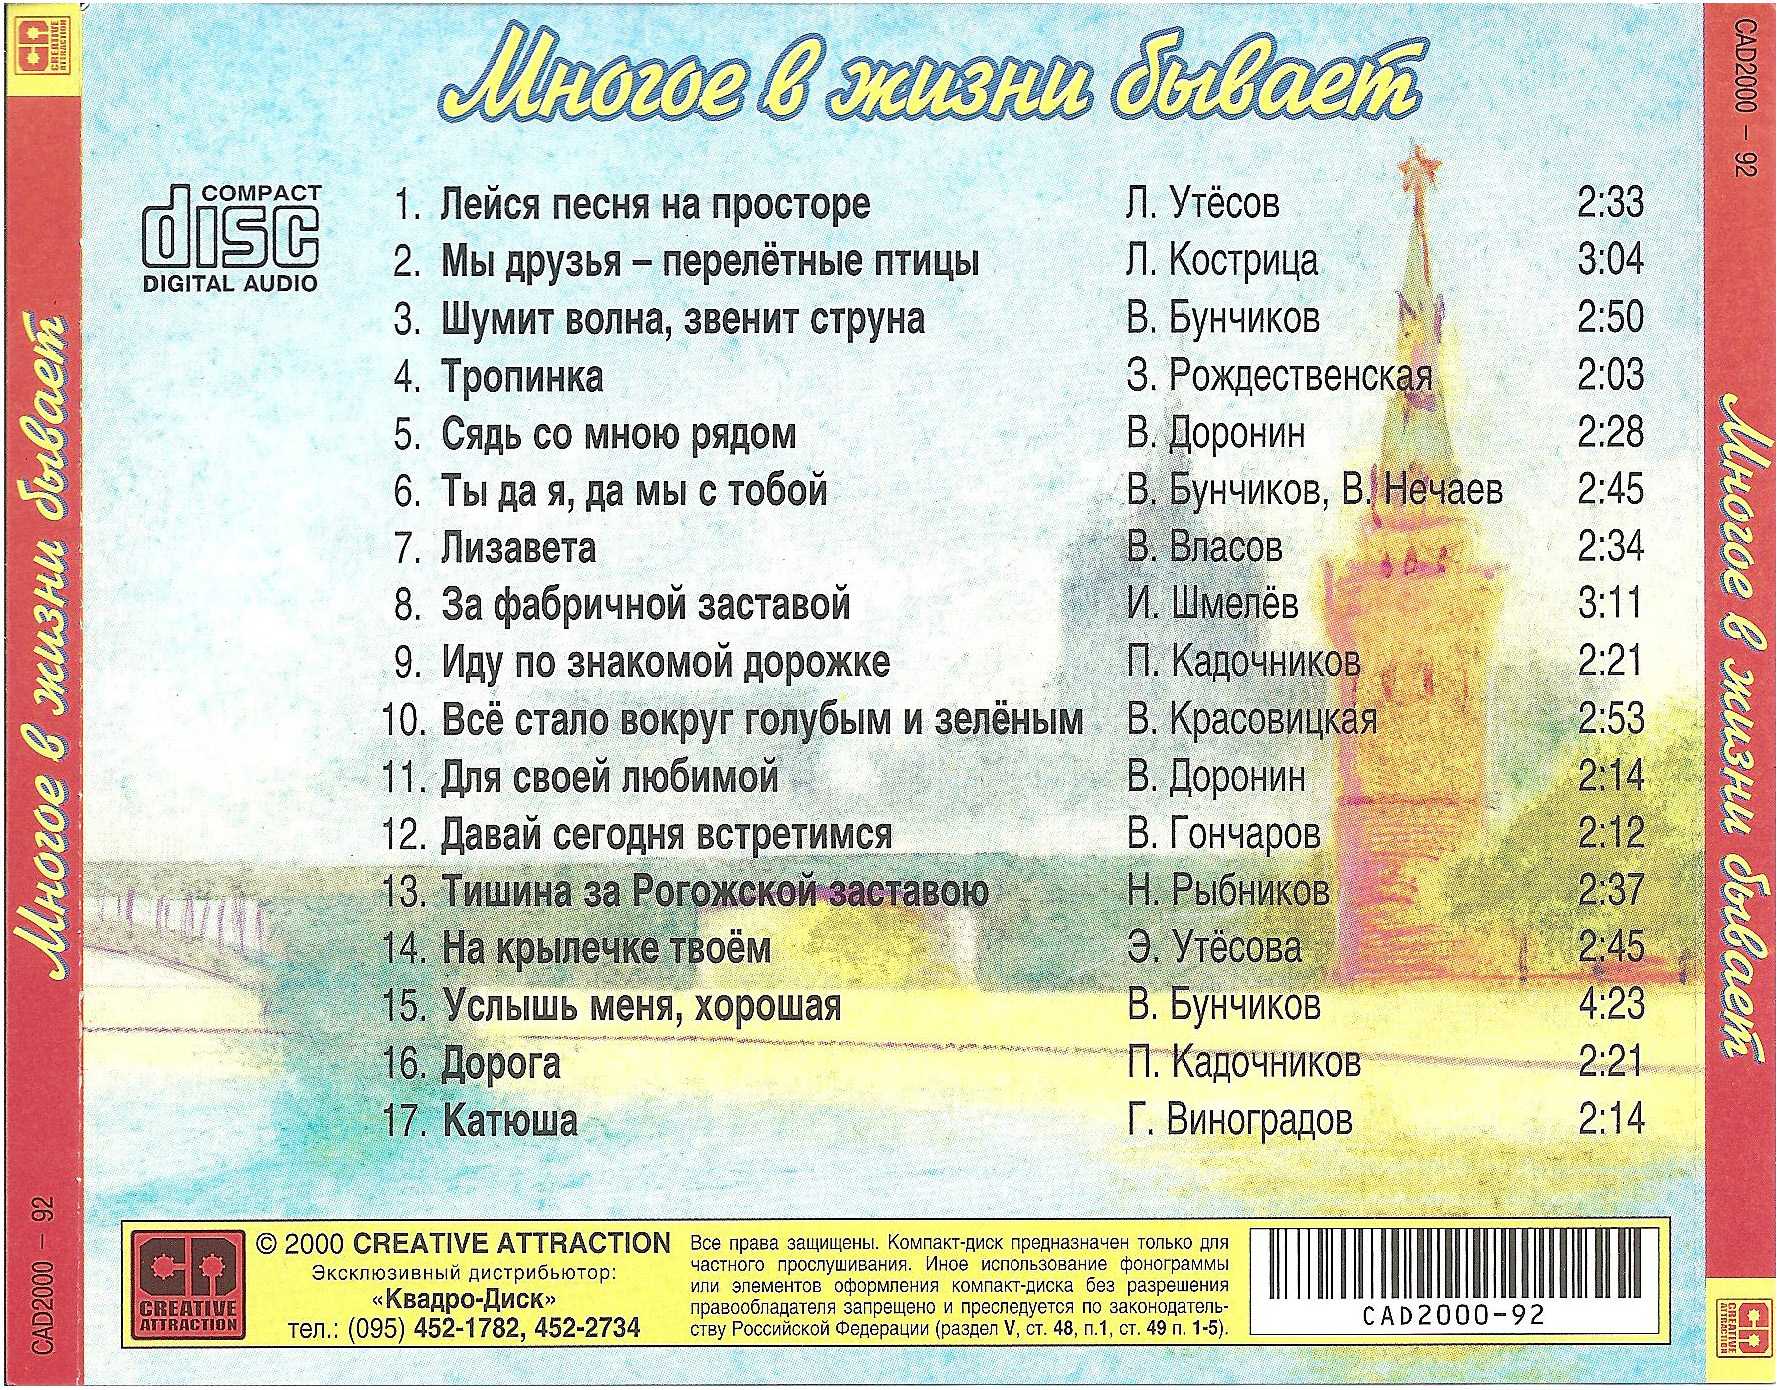 Название старинных песен. Список песен. Известные советские песни список. Популярные песни список. Названия известных песен.